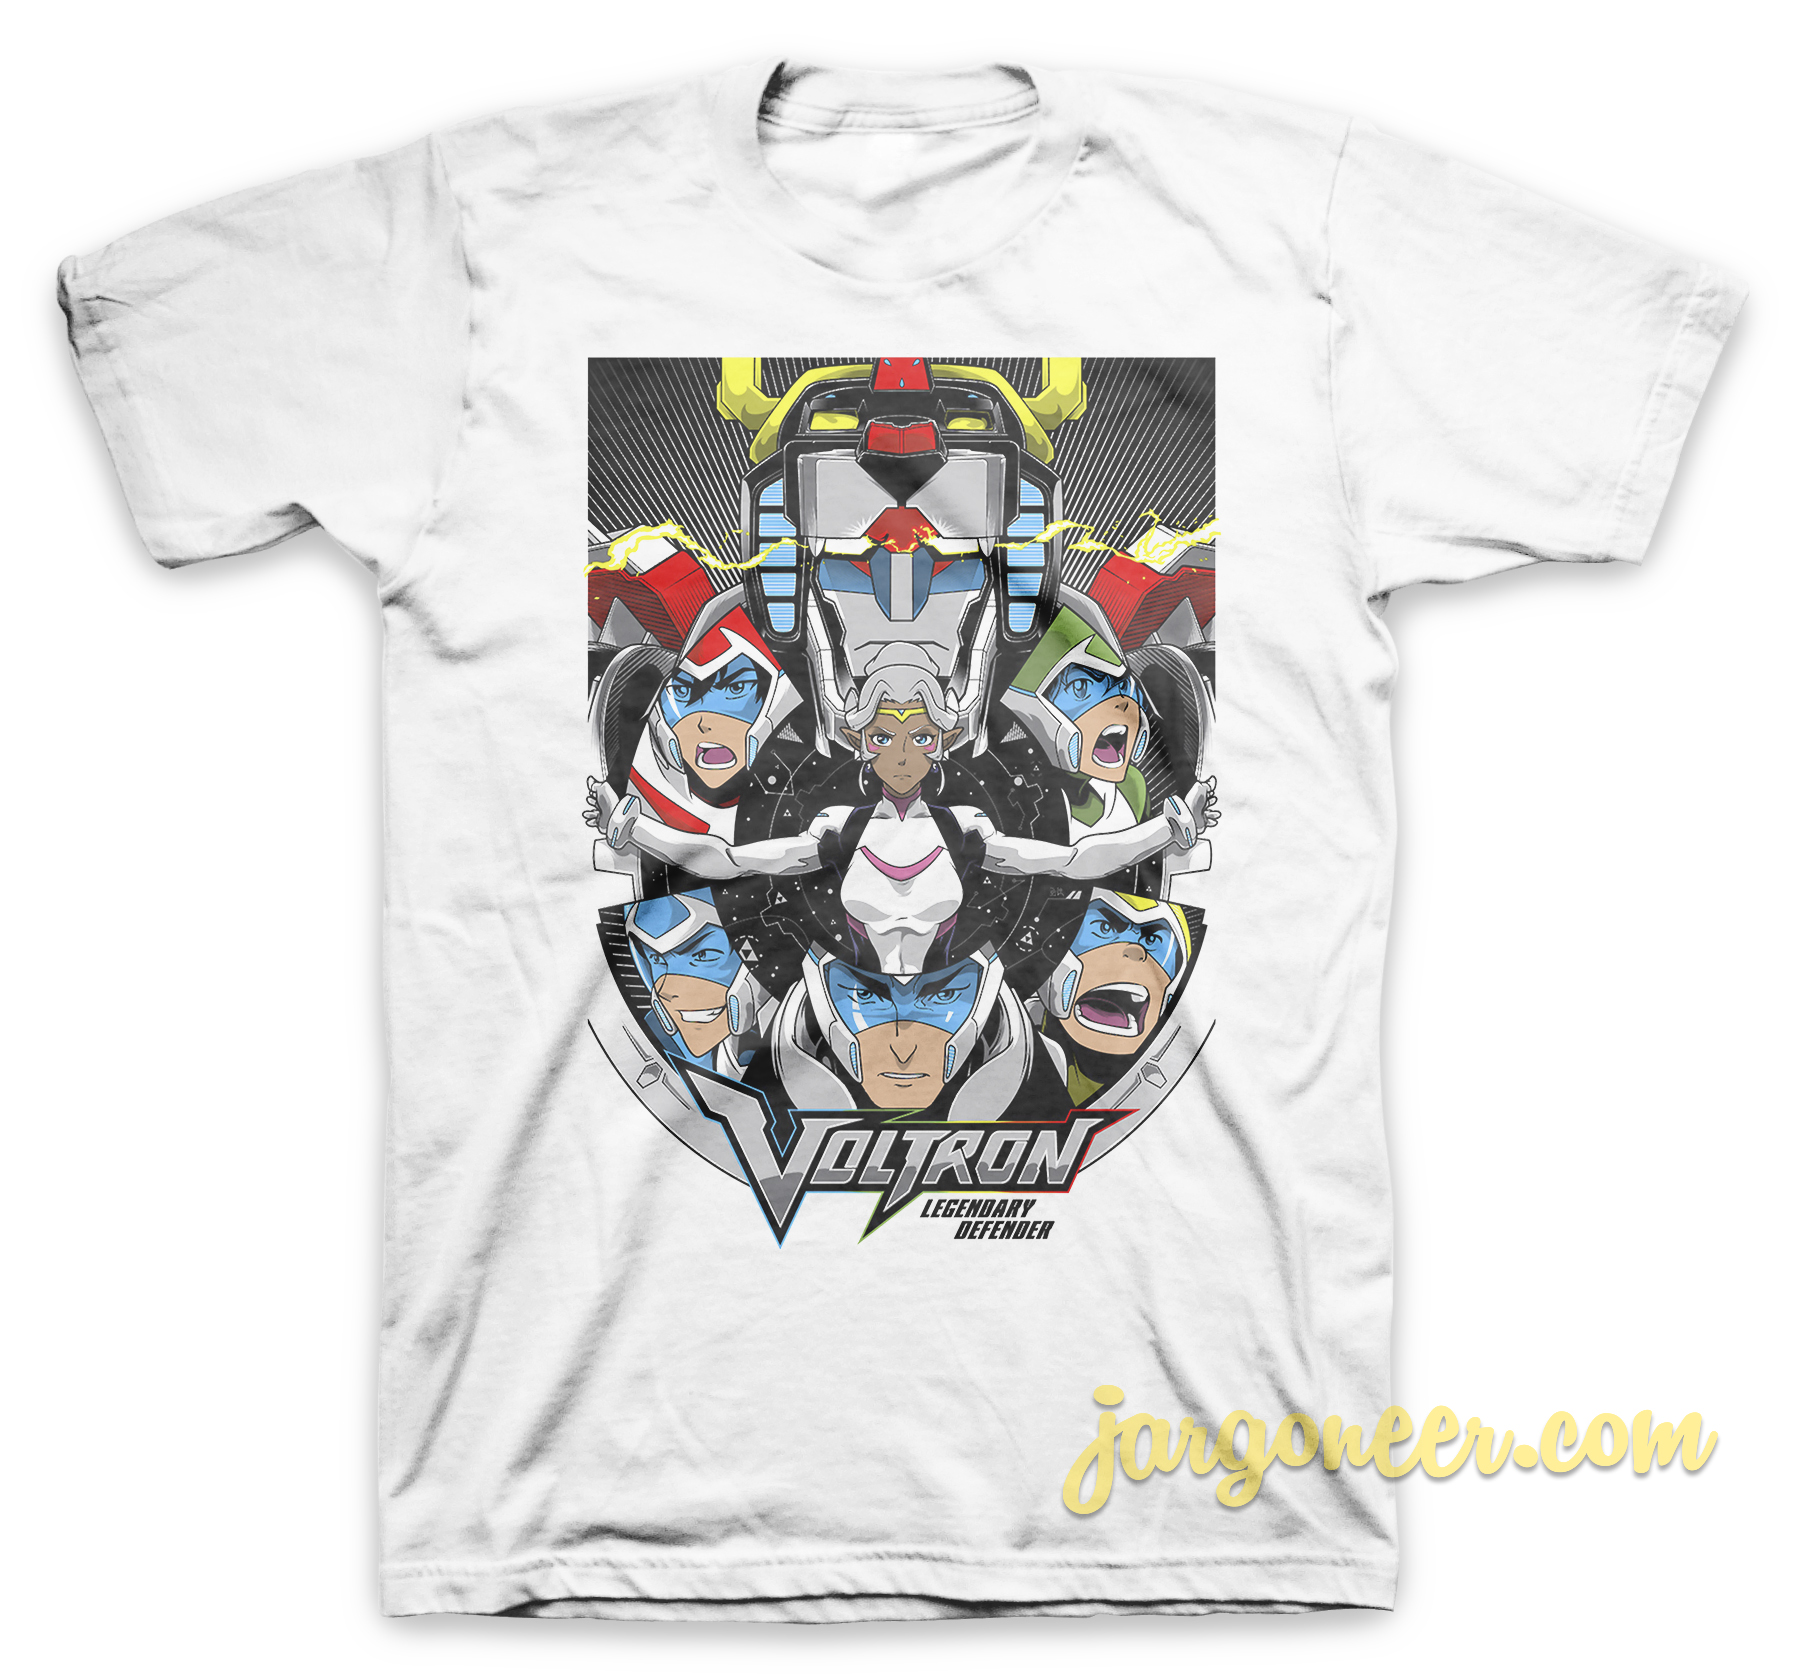 Voltron The Legendary Defender White T Shirt - Shop Unique Graphic Cool Shirt Designs